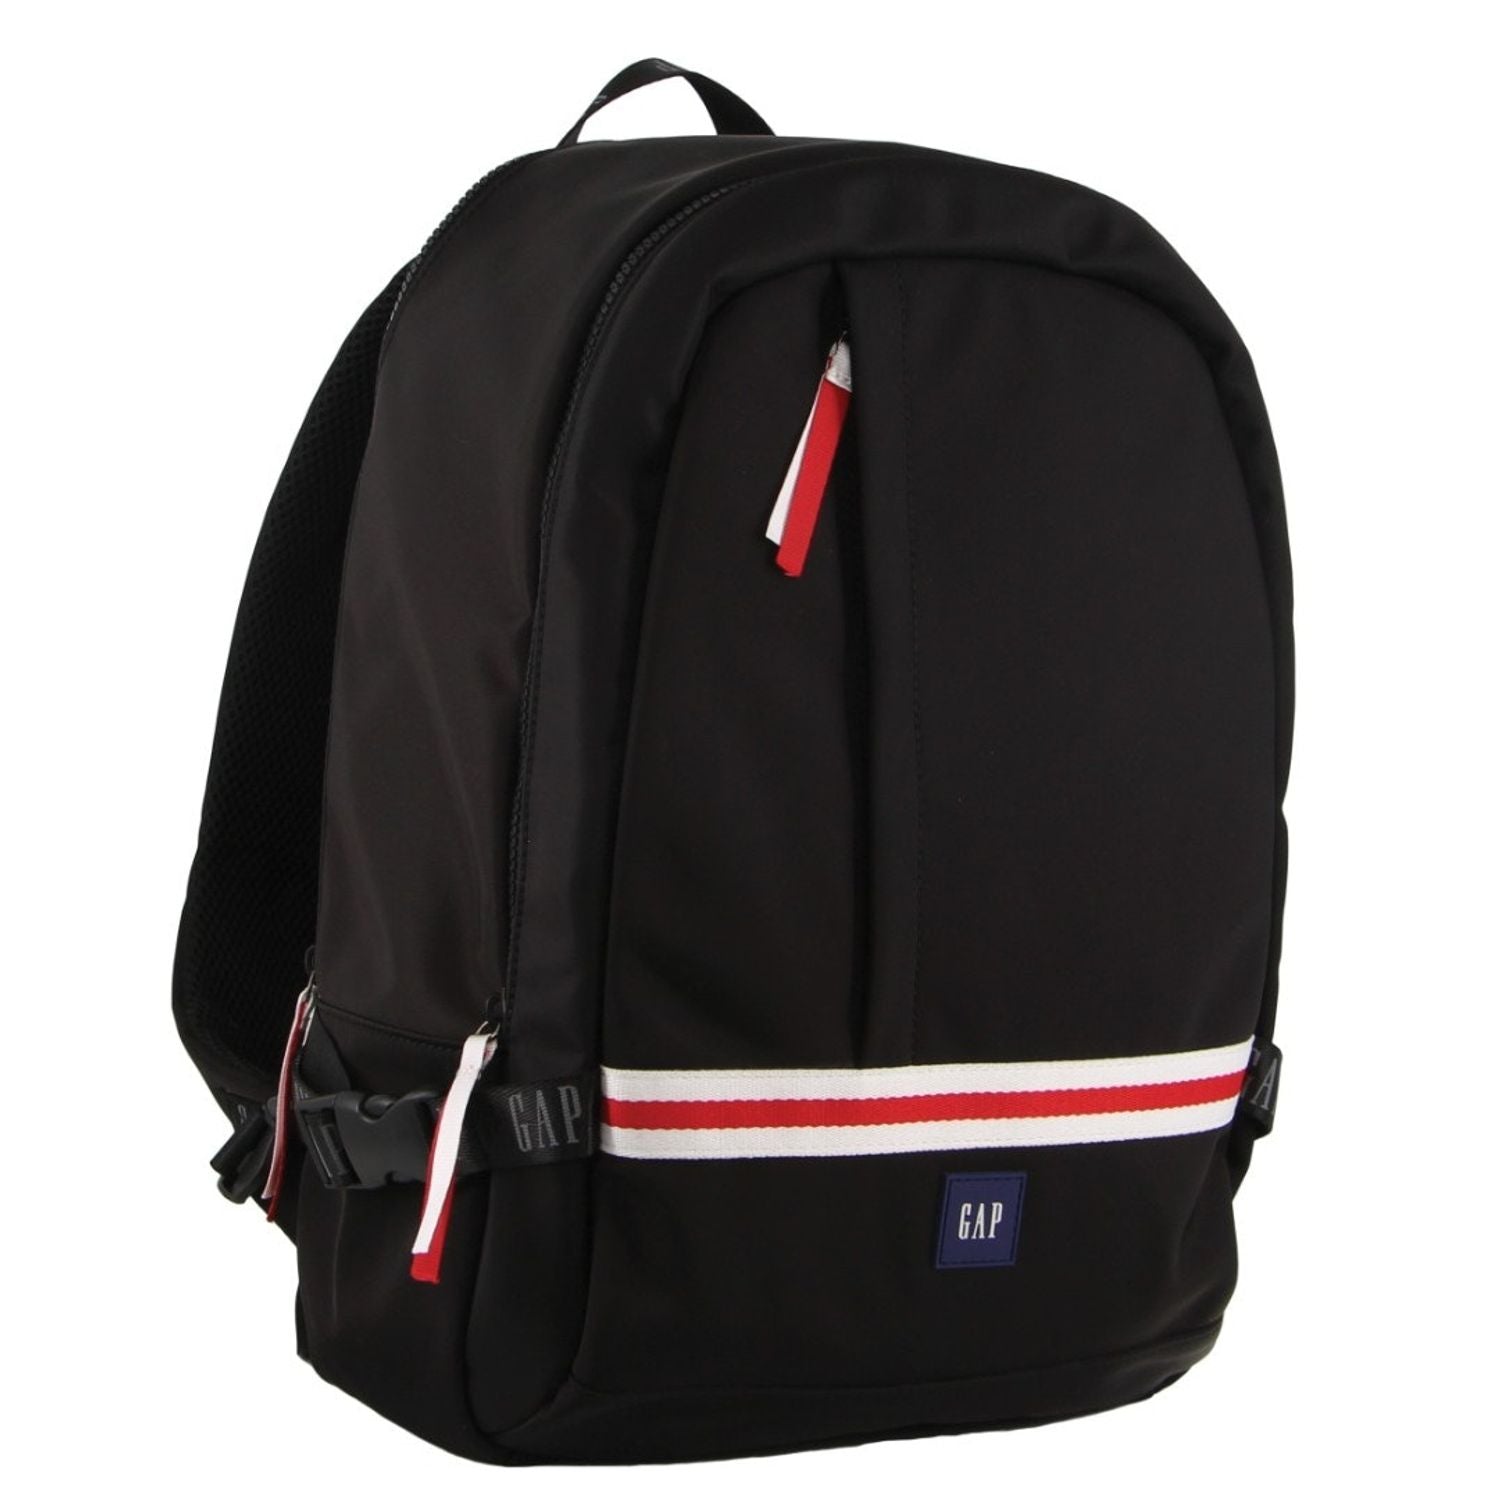 GAP - 28 Unisex Nylon 40cm Backpack - Black